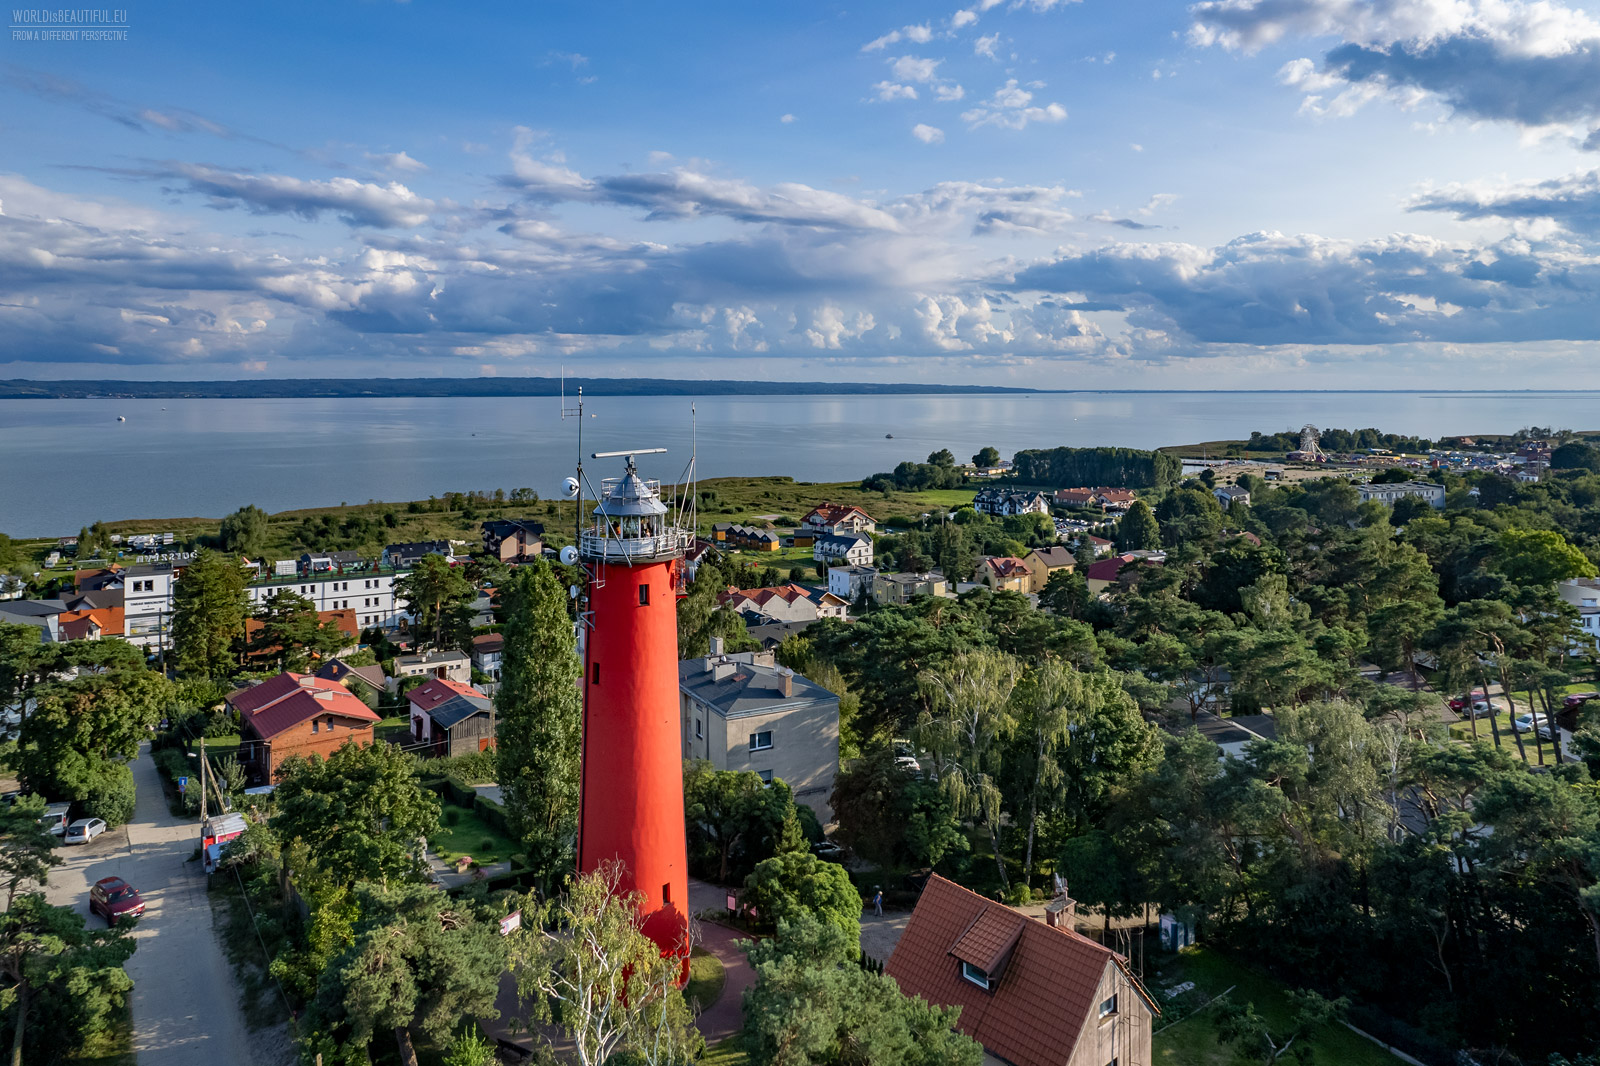 Lighthouse in Krynica Morska